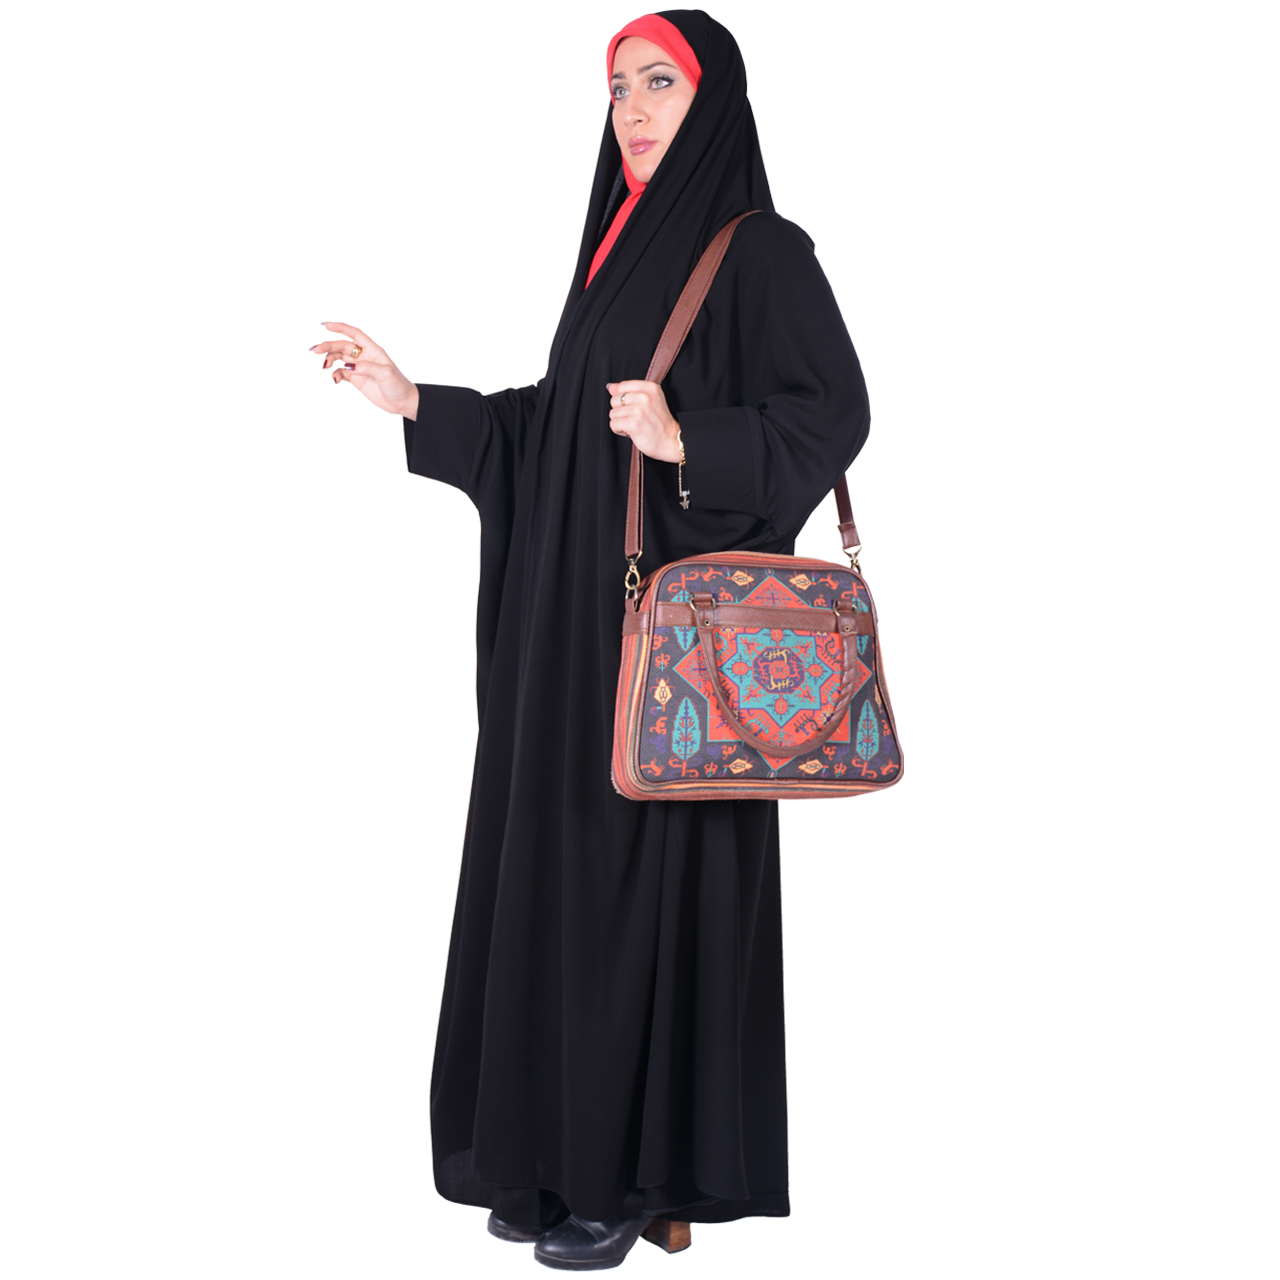 نکته خرید - قیمت روز چادر دانشجویی شهر حجاب مدل مچدار کرپ حریرالاسود کد 8027 خرید